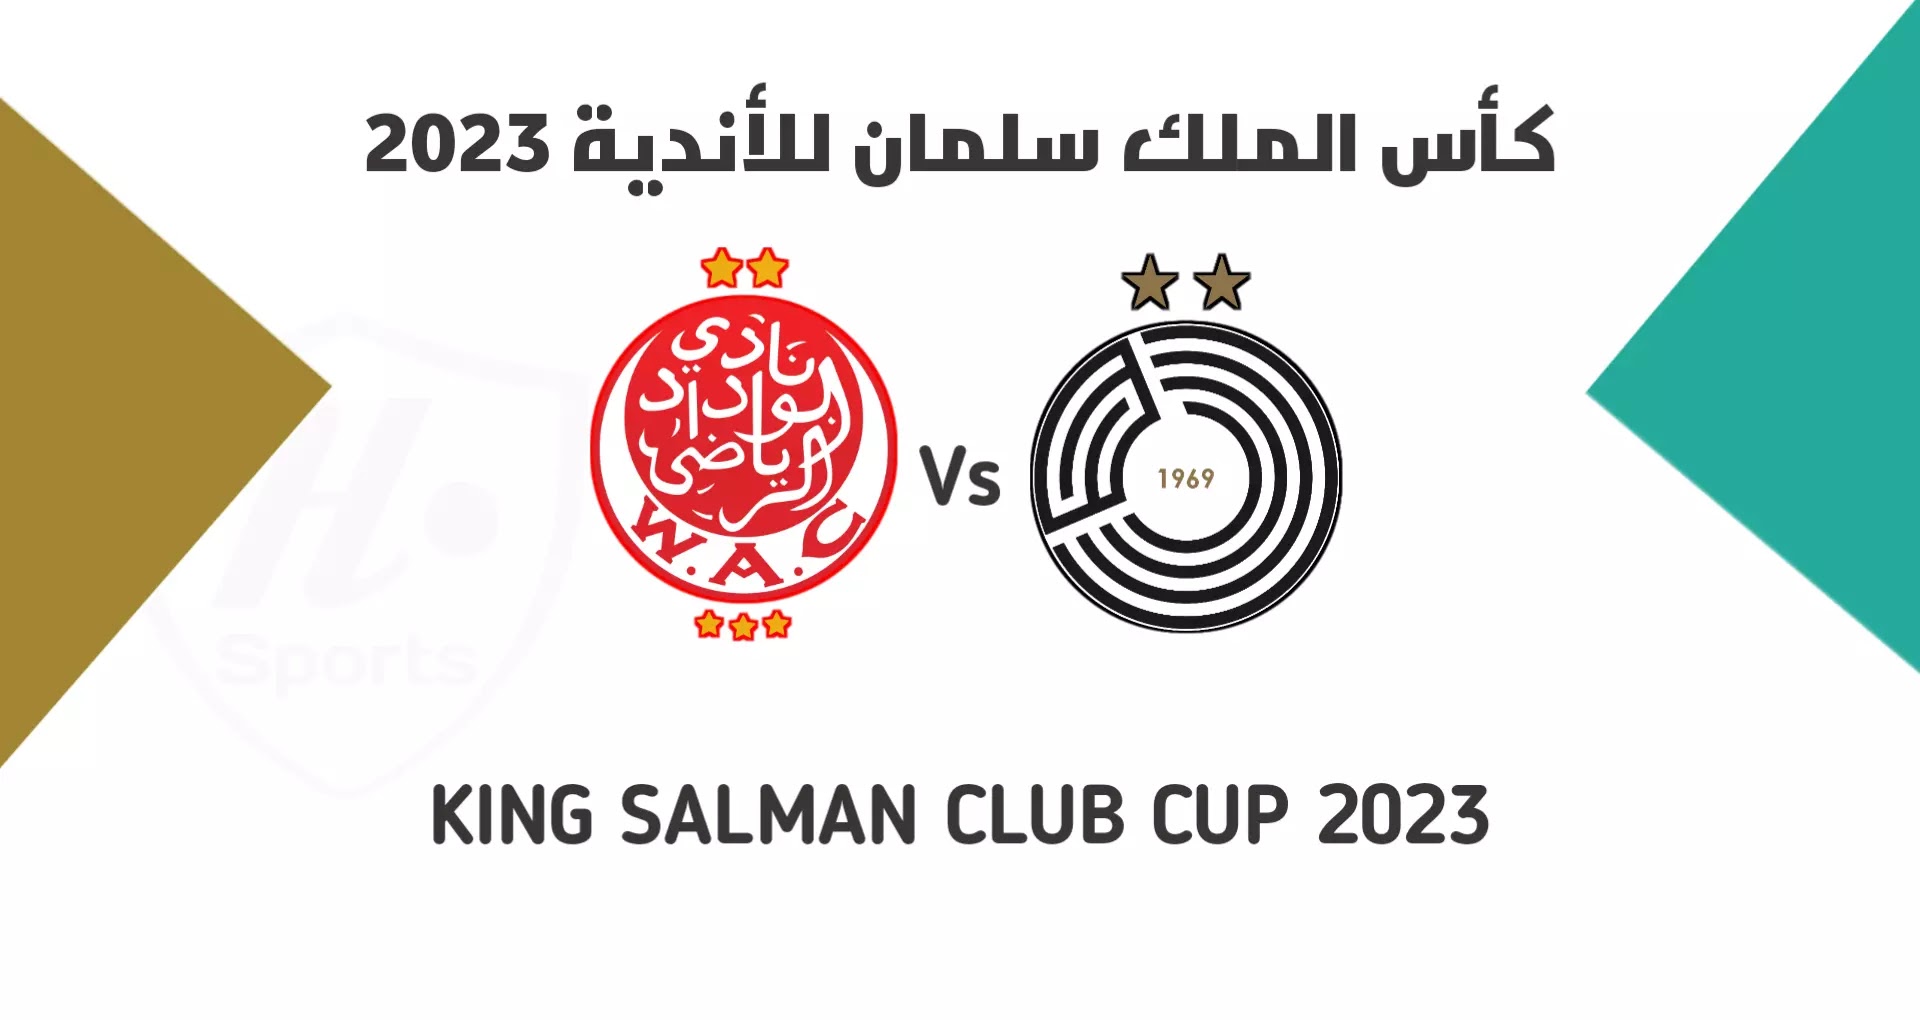 موعد مباراة السد القطري والوداد المغربي في كأس سلمان للأندية 2023